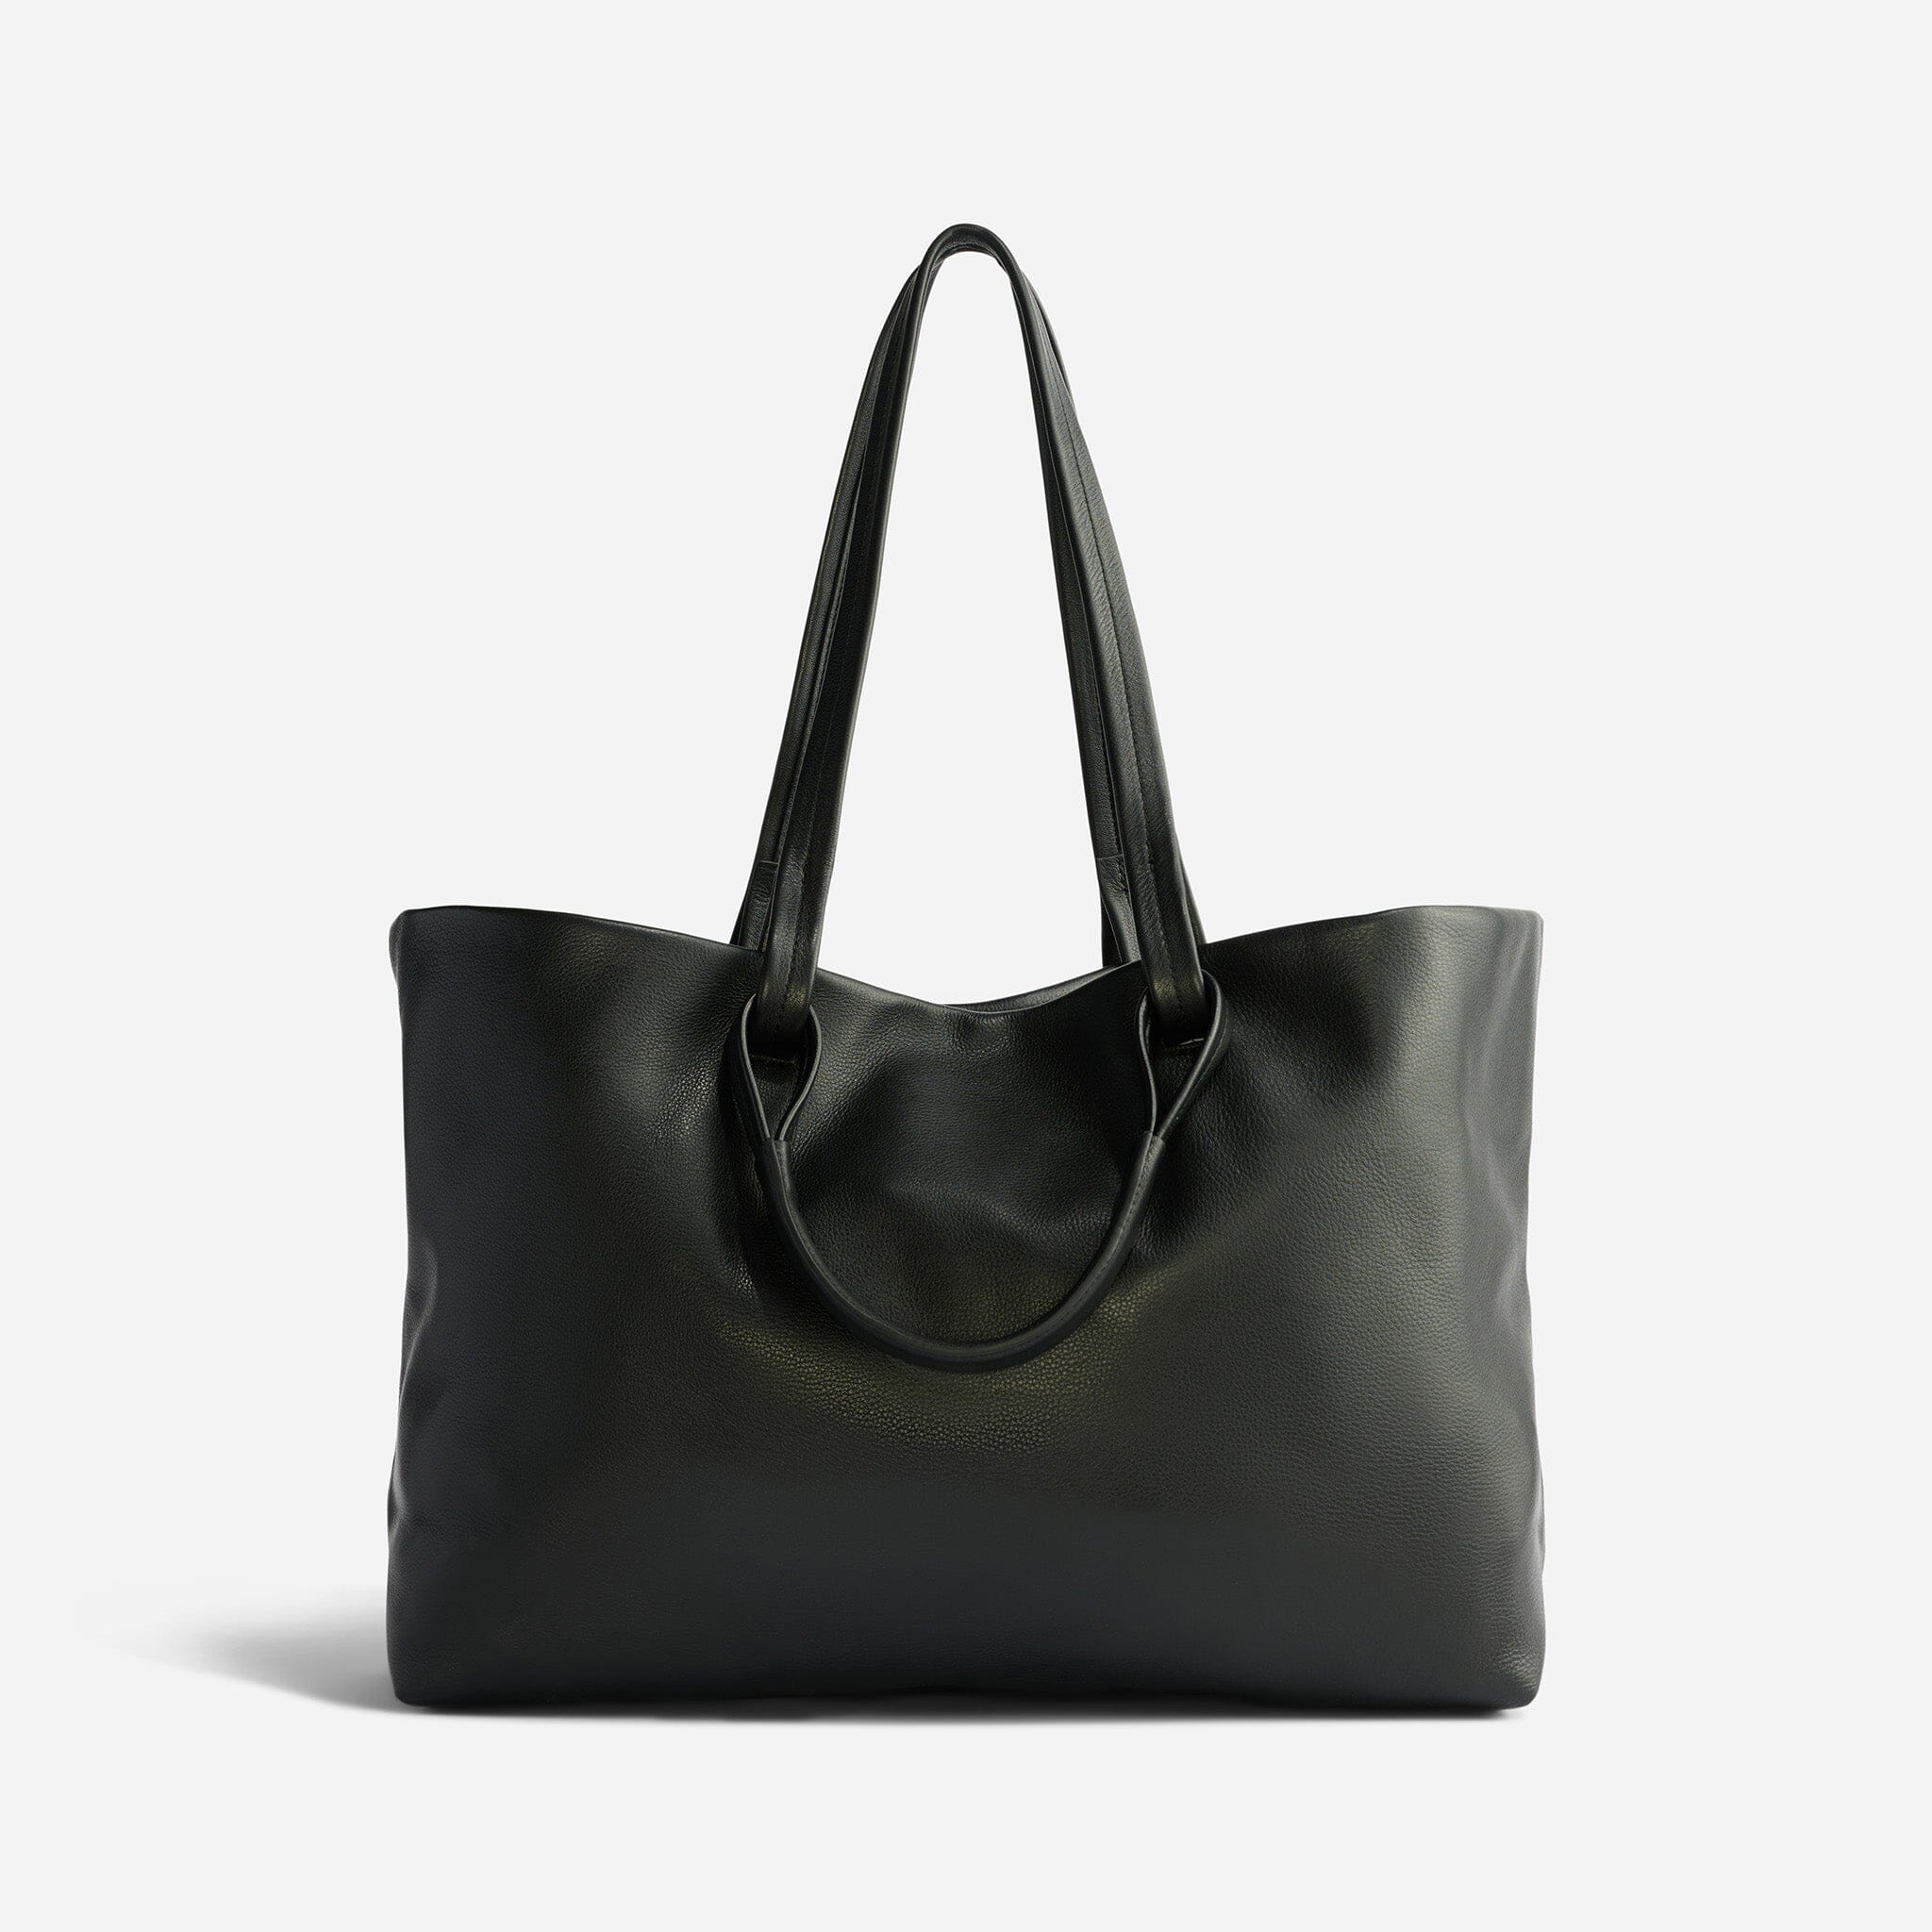 Women's Bags - Handbags, Tote Bags & More